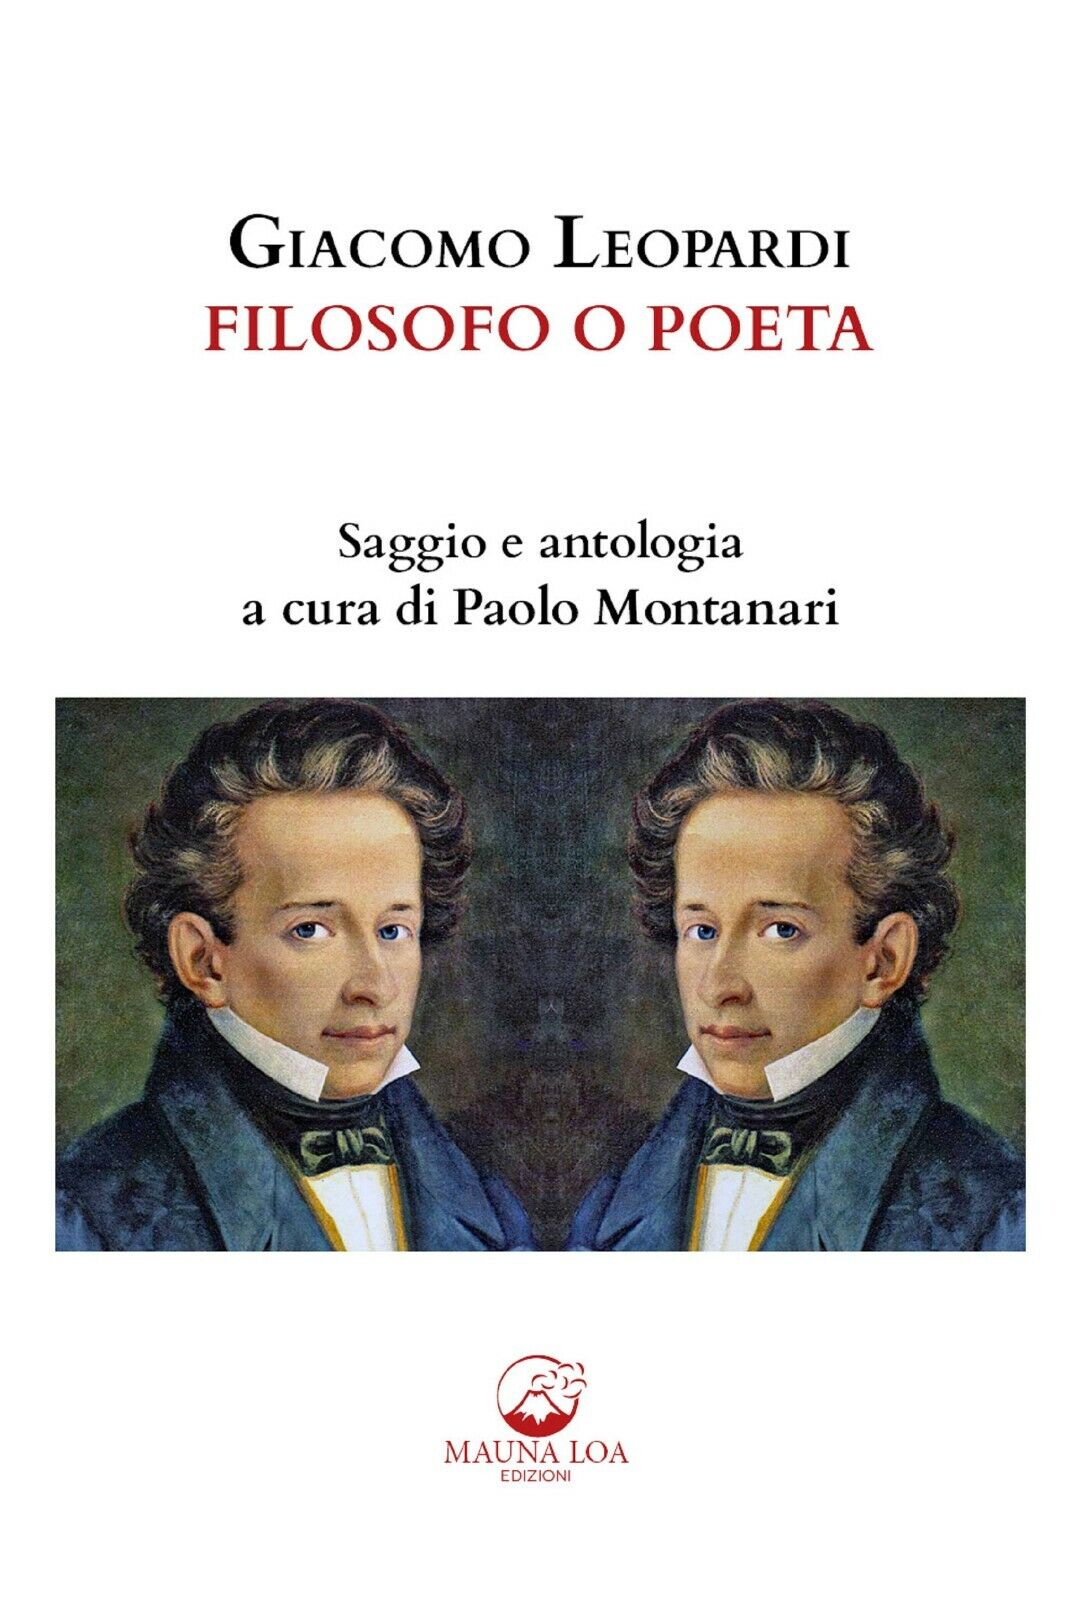 Giacomo Leopardi. Filosofo o poeta. Saggio e antologia. Ediz. critica  di P. Mon